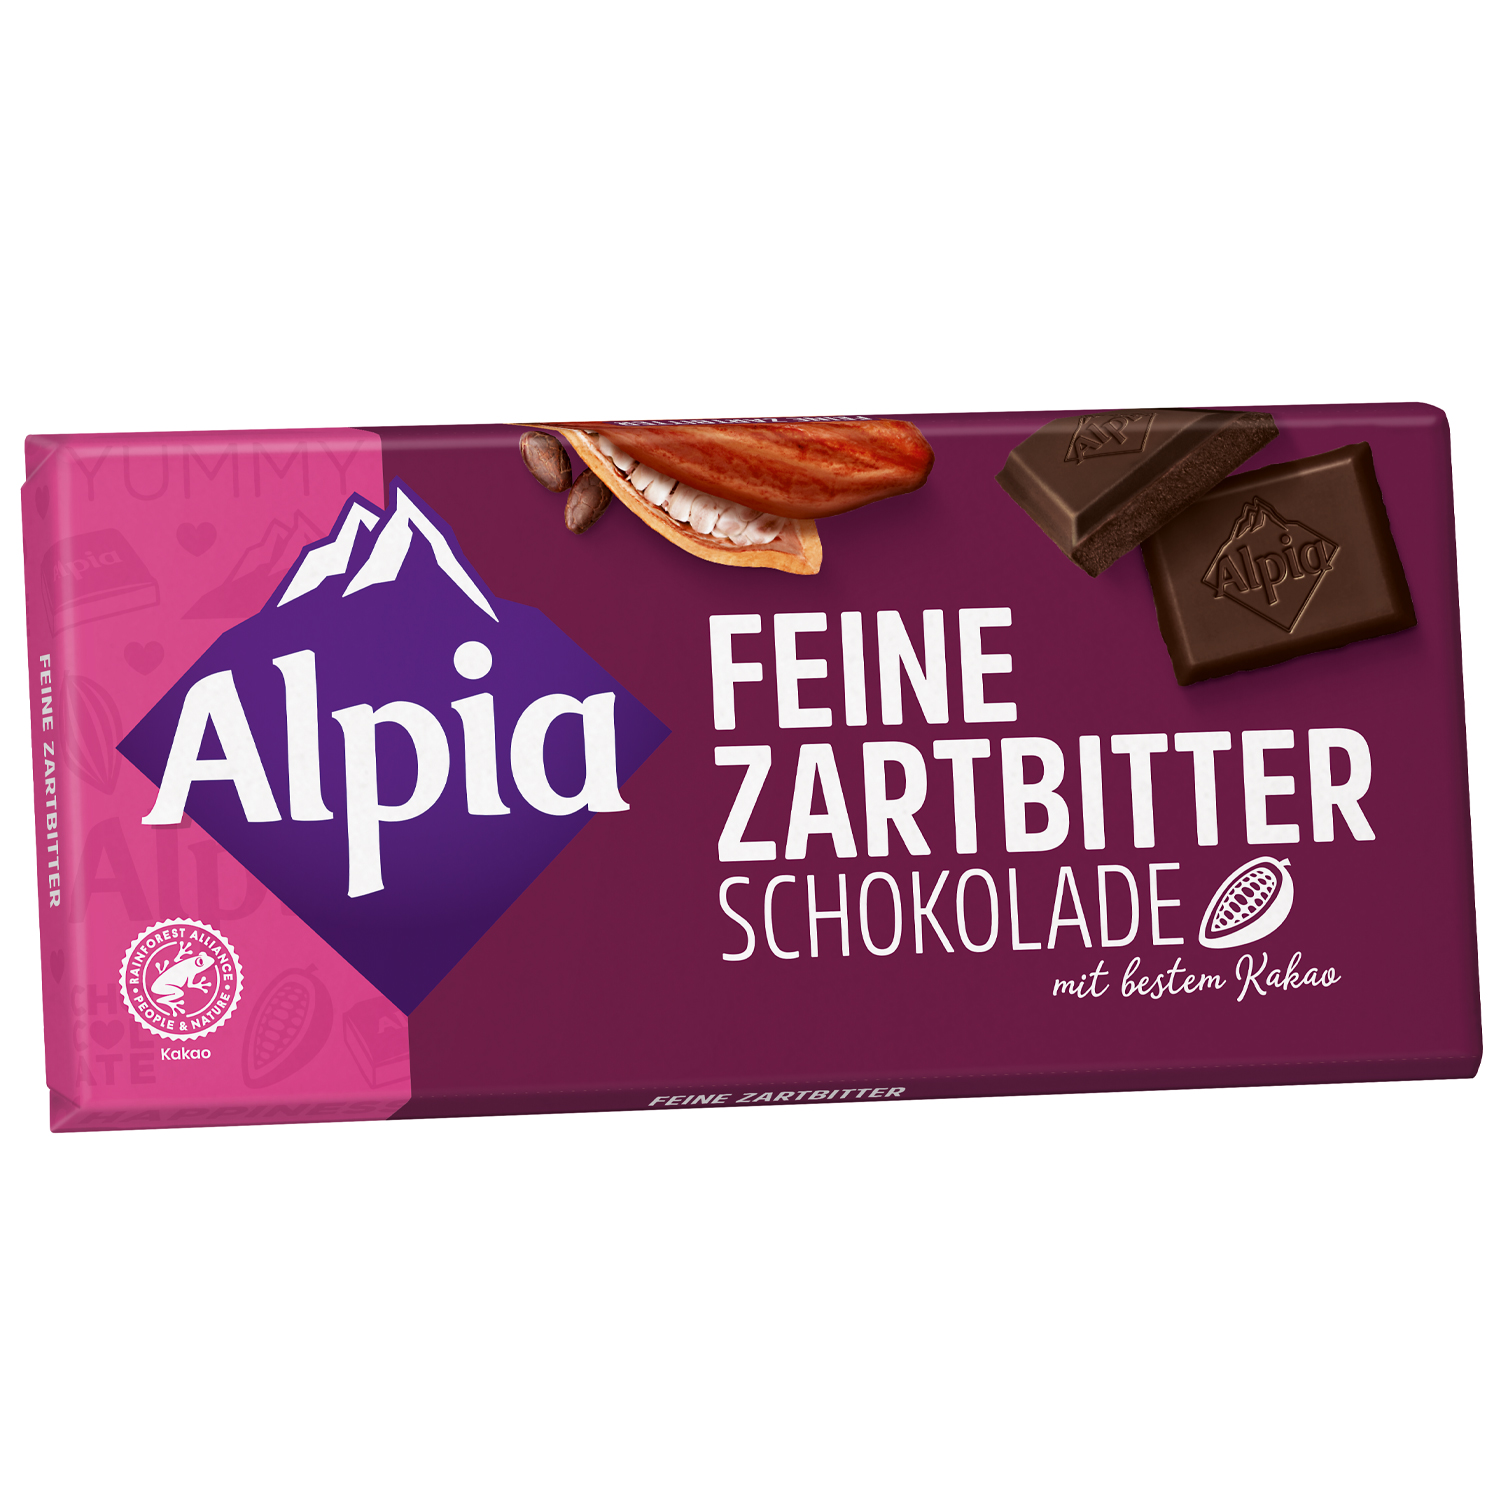 Alpia Feine Zartbitter